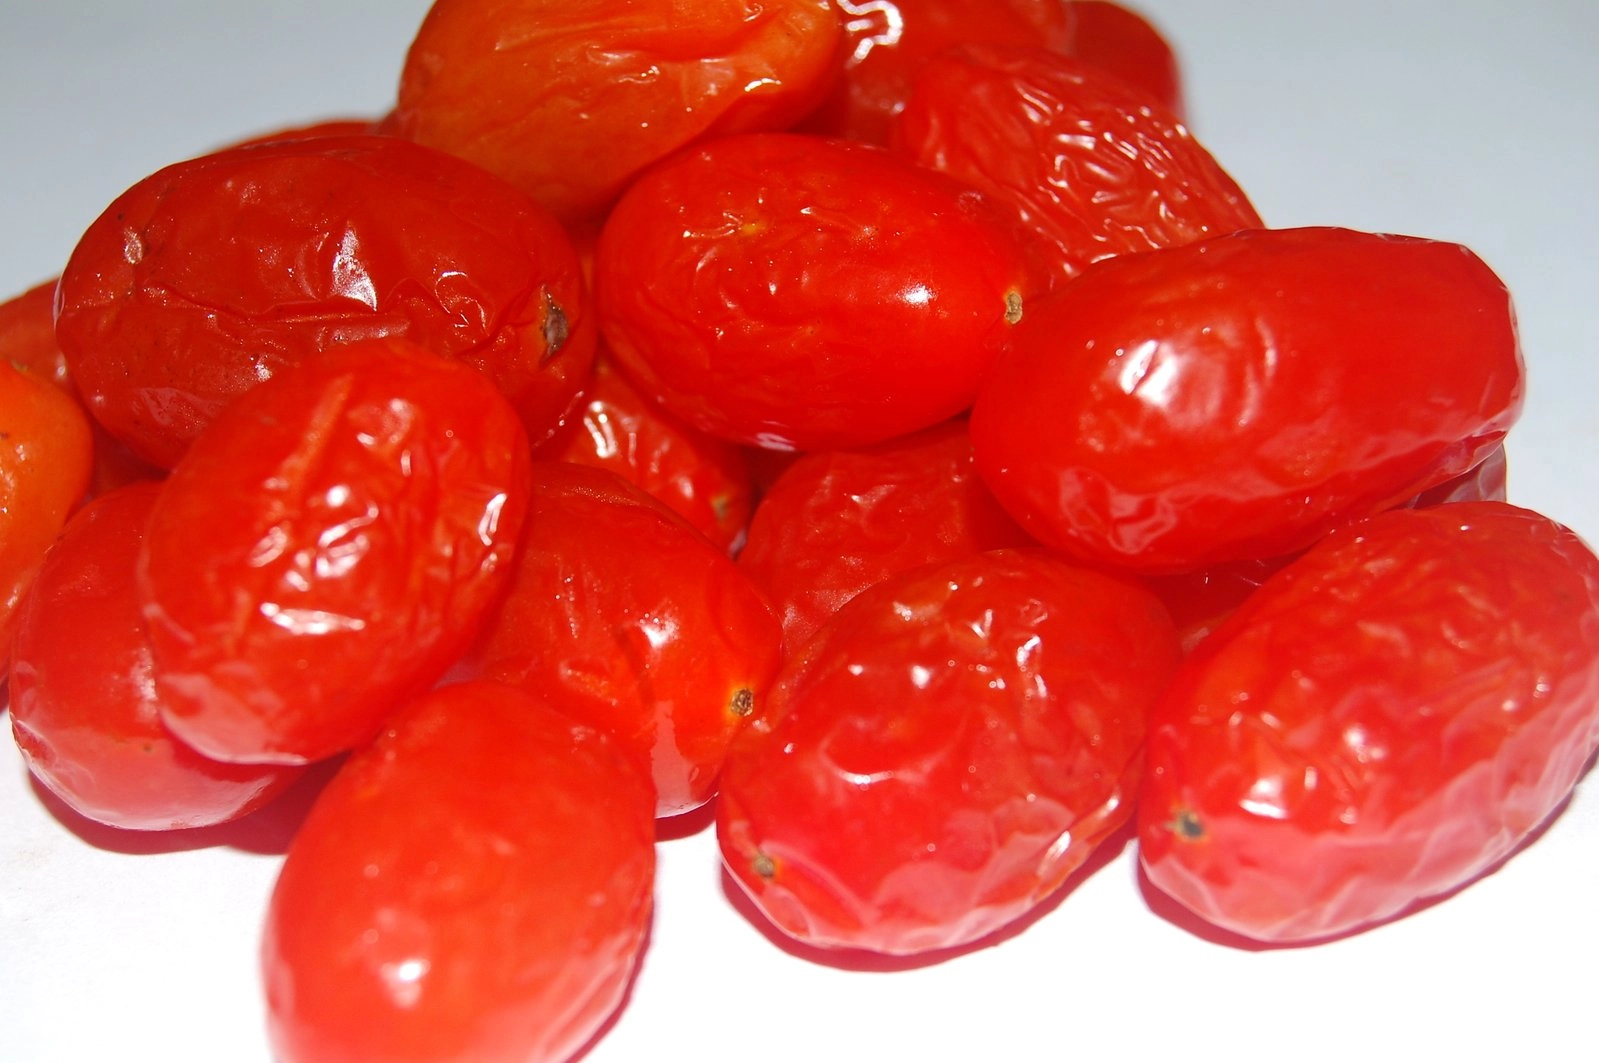 انگور گوجه فرنگی در فایل عکس نور خراب شده پوسیده